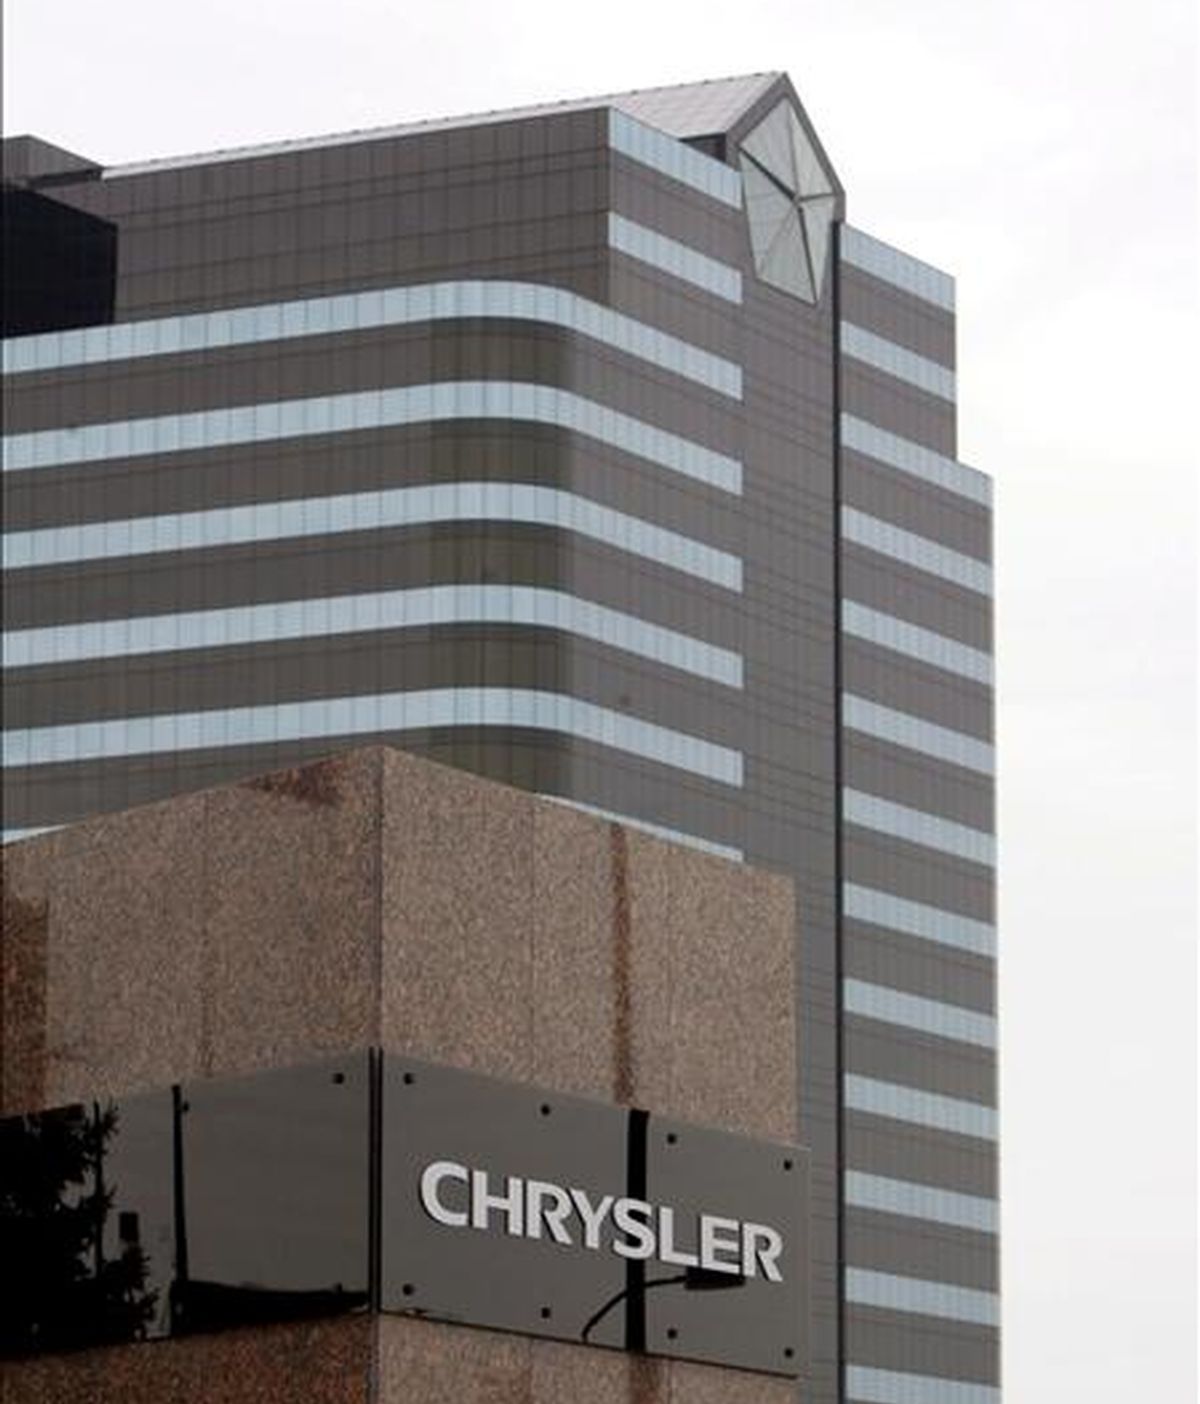 Chrysler tiene hasta el 1 de mayo para completar un plan de reestructuración de sus responsabilidades financieras y operaciones que incluya una alianza con Fiat. EFE/Archivo